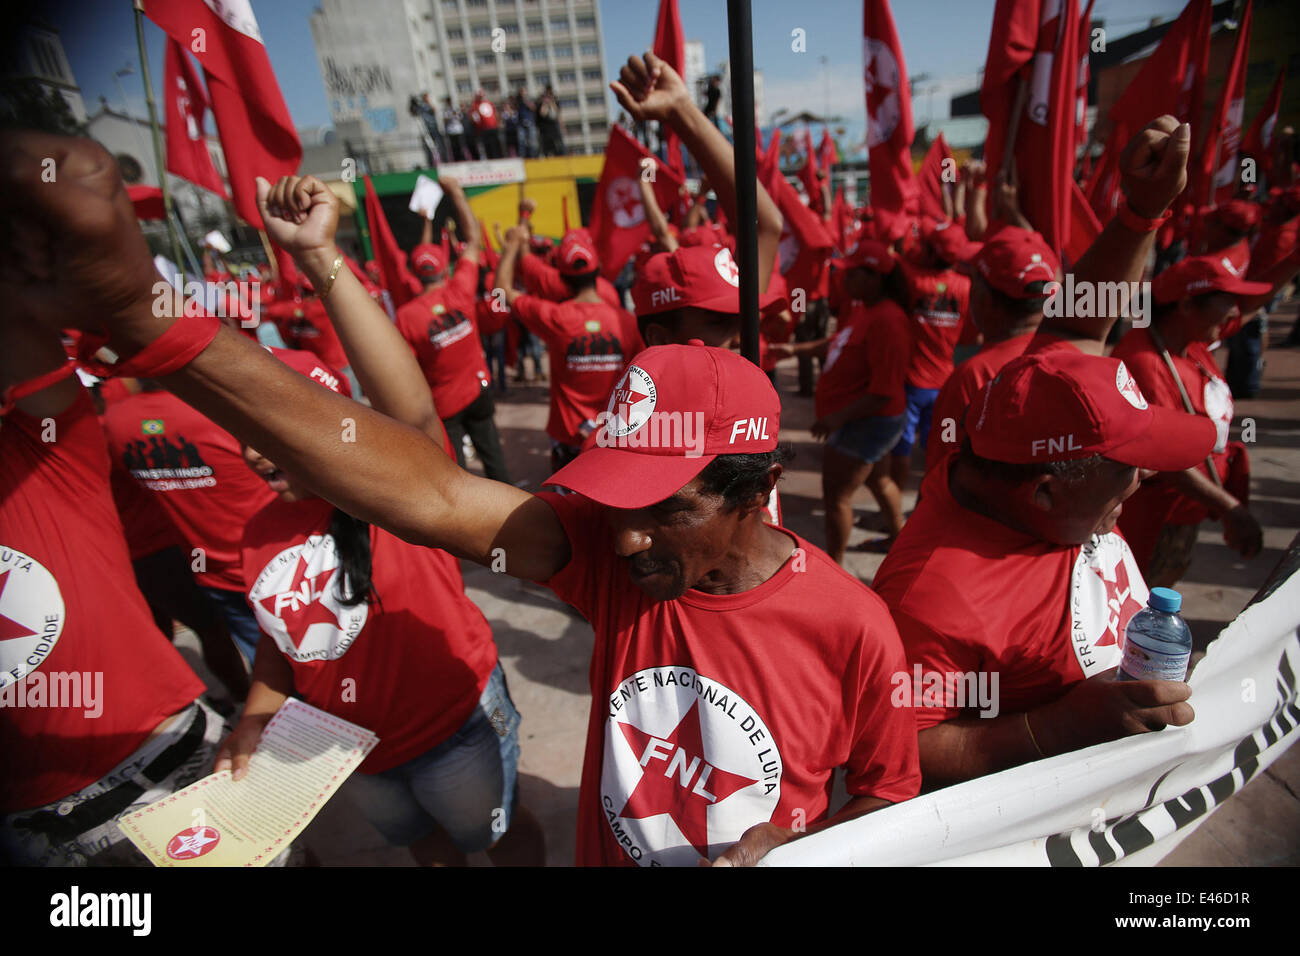 (140703) -- BRASILE SAO PAULO, luglio 03, 2014 (Xinhua) -- manifestanti assistere a una dimostrazione in strada di Sao Paulo, Brasile, il 3 luglio 2014. I membri dei movimenti sociali come i senza terra movimento dei lavoratori (MTS) e senzatetto movimento dei lavoratori (MST) riuniti a Sao Paulo il giovedì, il sollevamento muliple richieste relative a riforme sulle terre e agricoltura al governo brasiliano. (Xinhua/Rahel Patrasso). Foto Stock